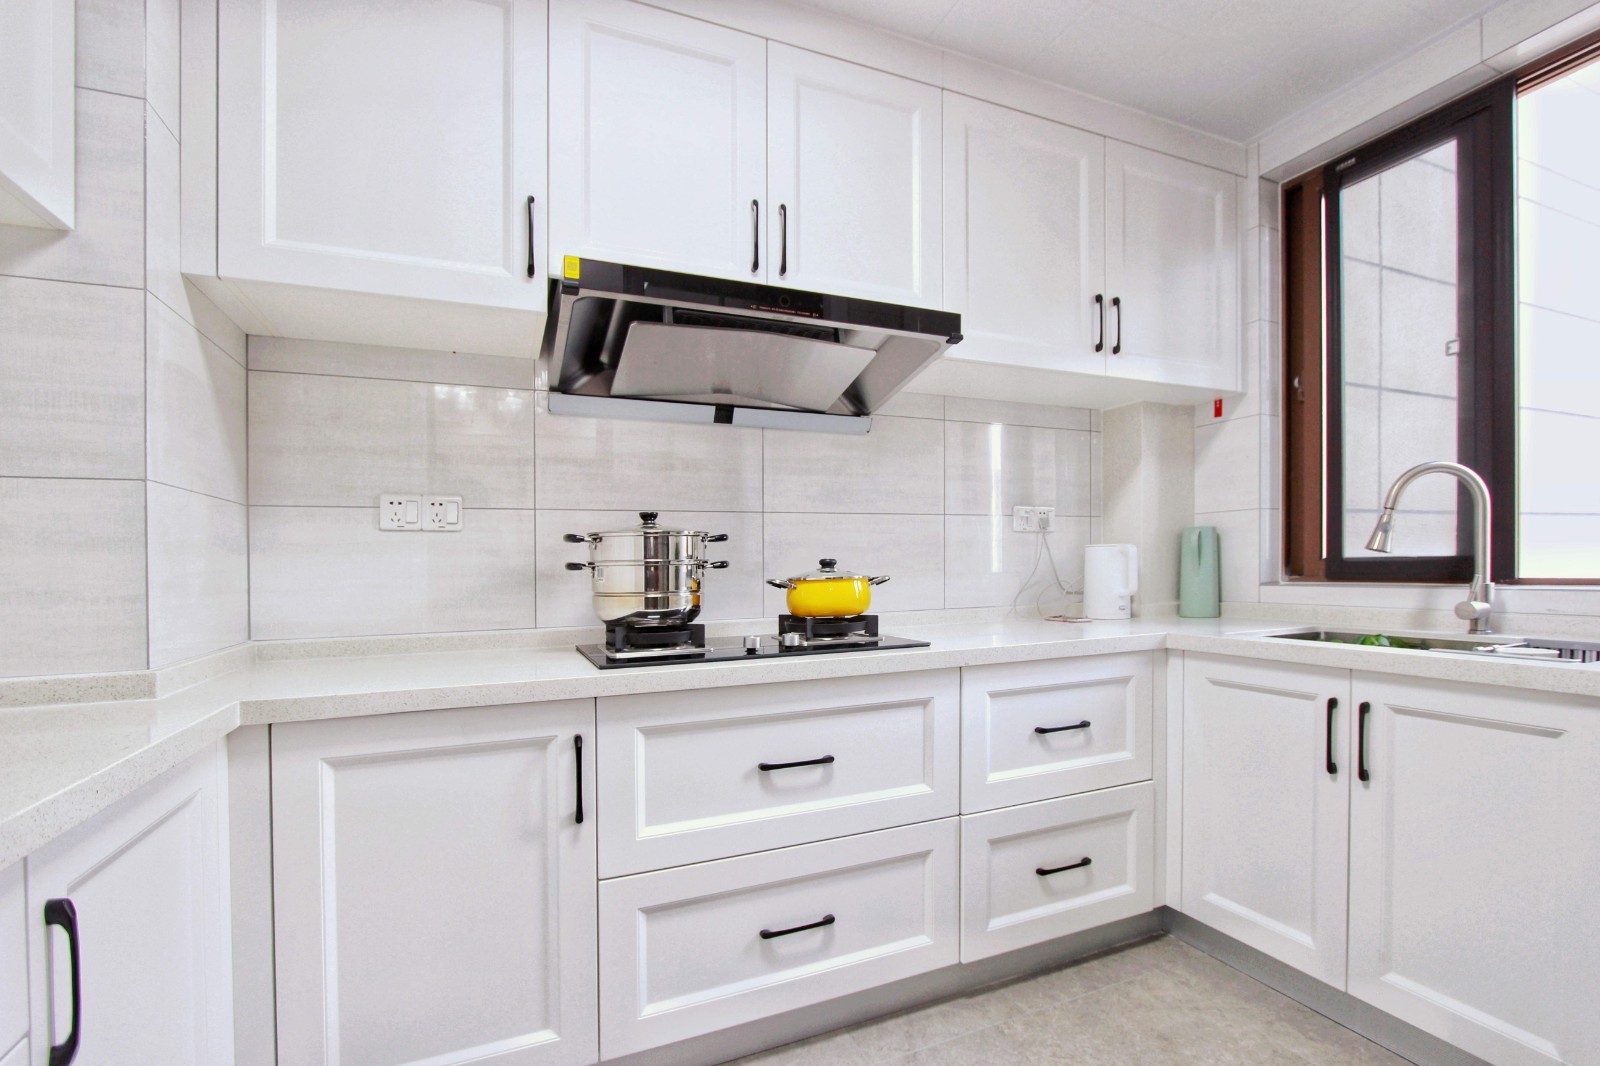 厨房不仅仅是一个烹饪场所,更是一个家庭的重心,白色橱柜搭配白色墙砖